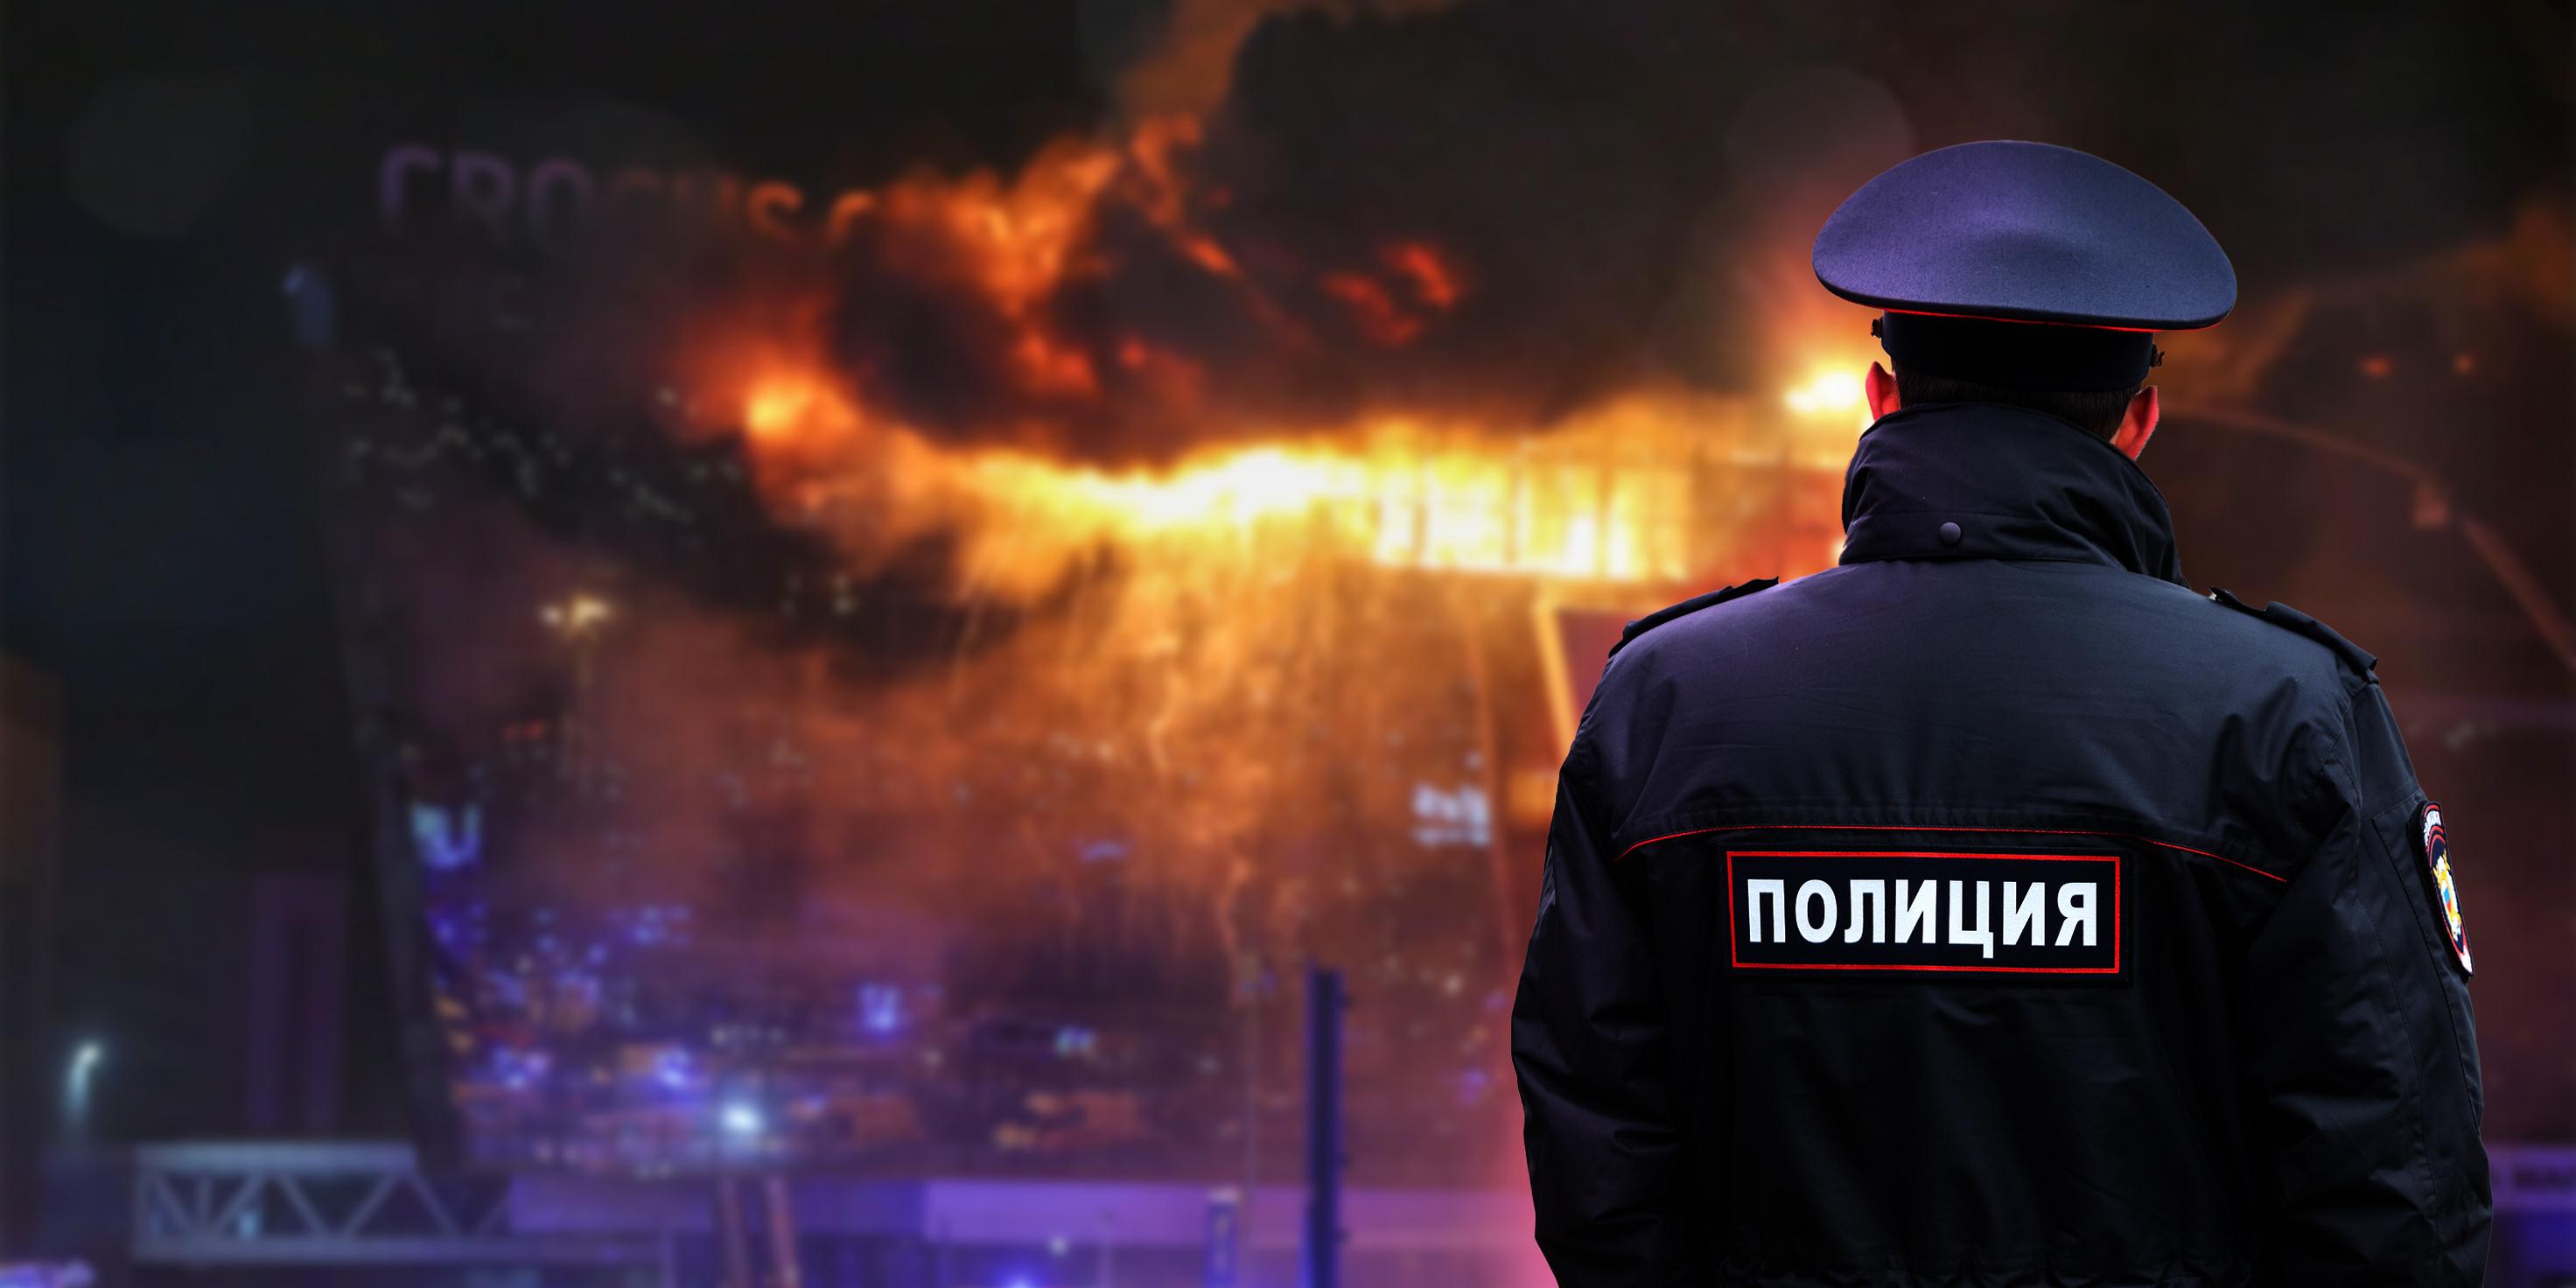 التداعيات المحتملة لهجوم داعش الأخير في موسكو